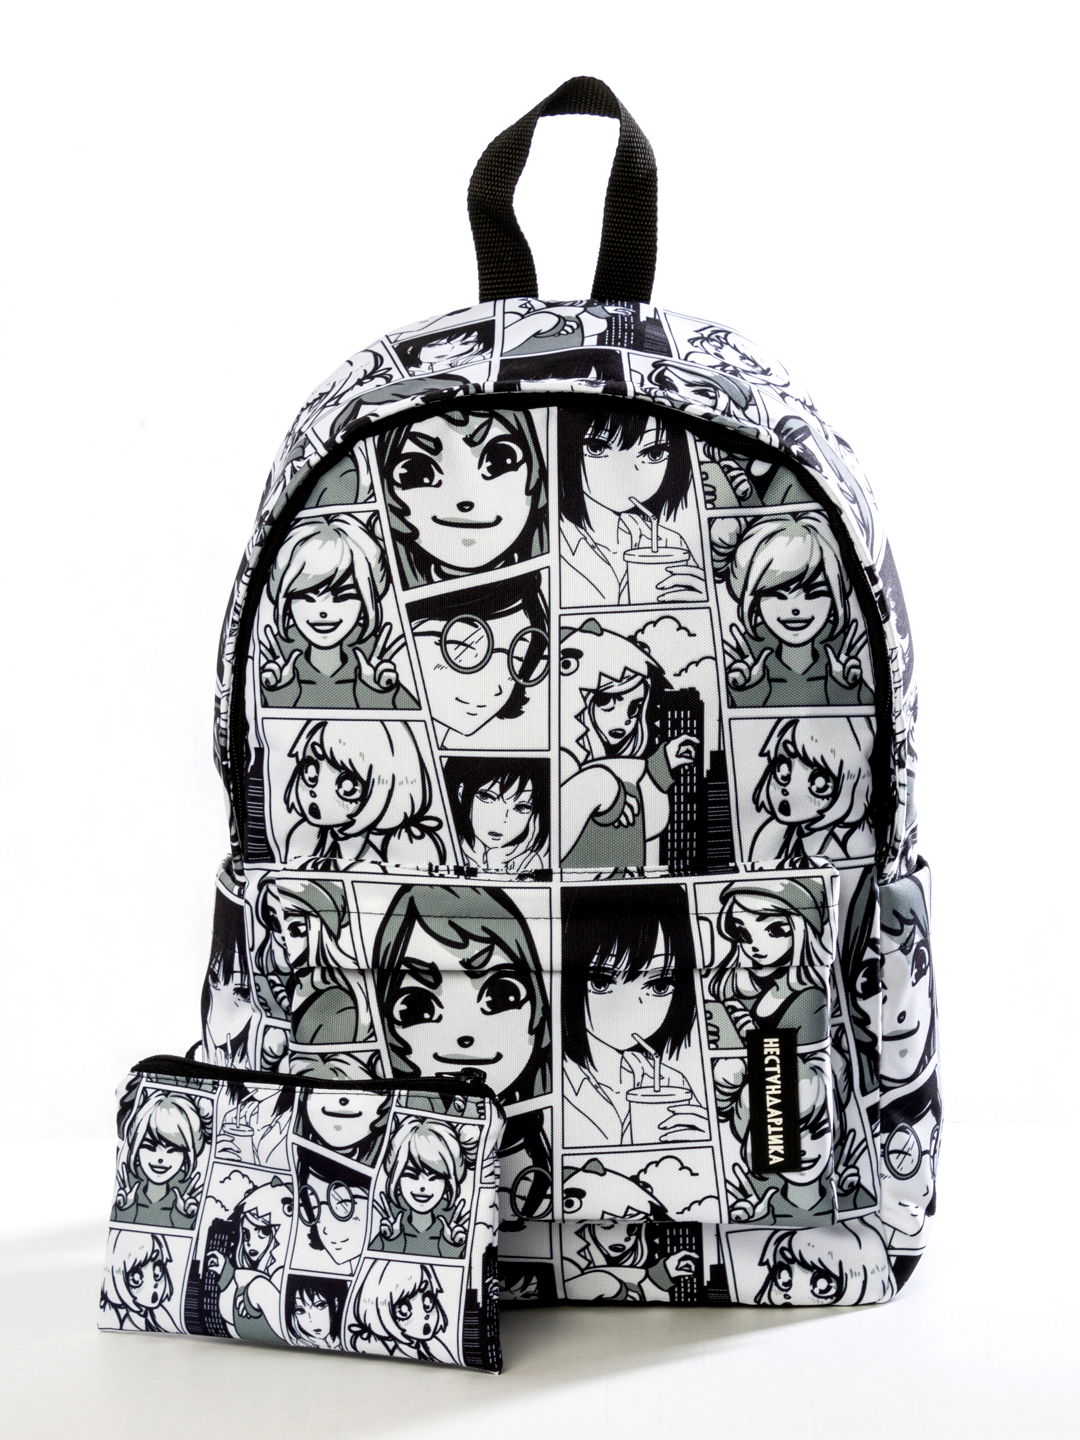 Рюкзак с аниме принтом для мальчика